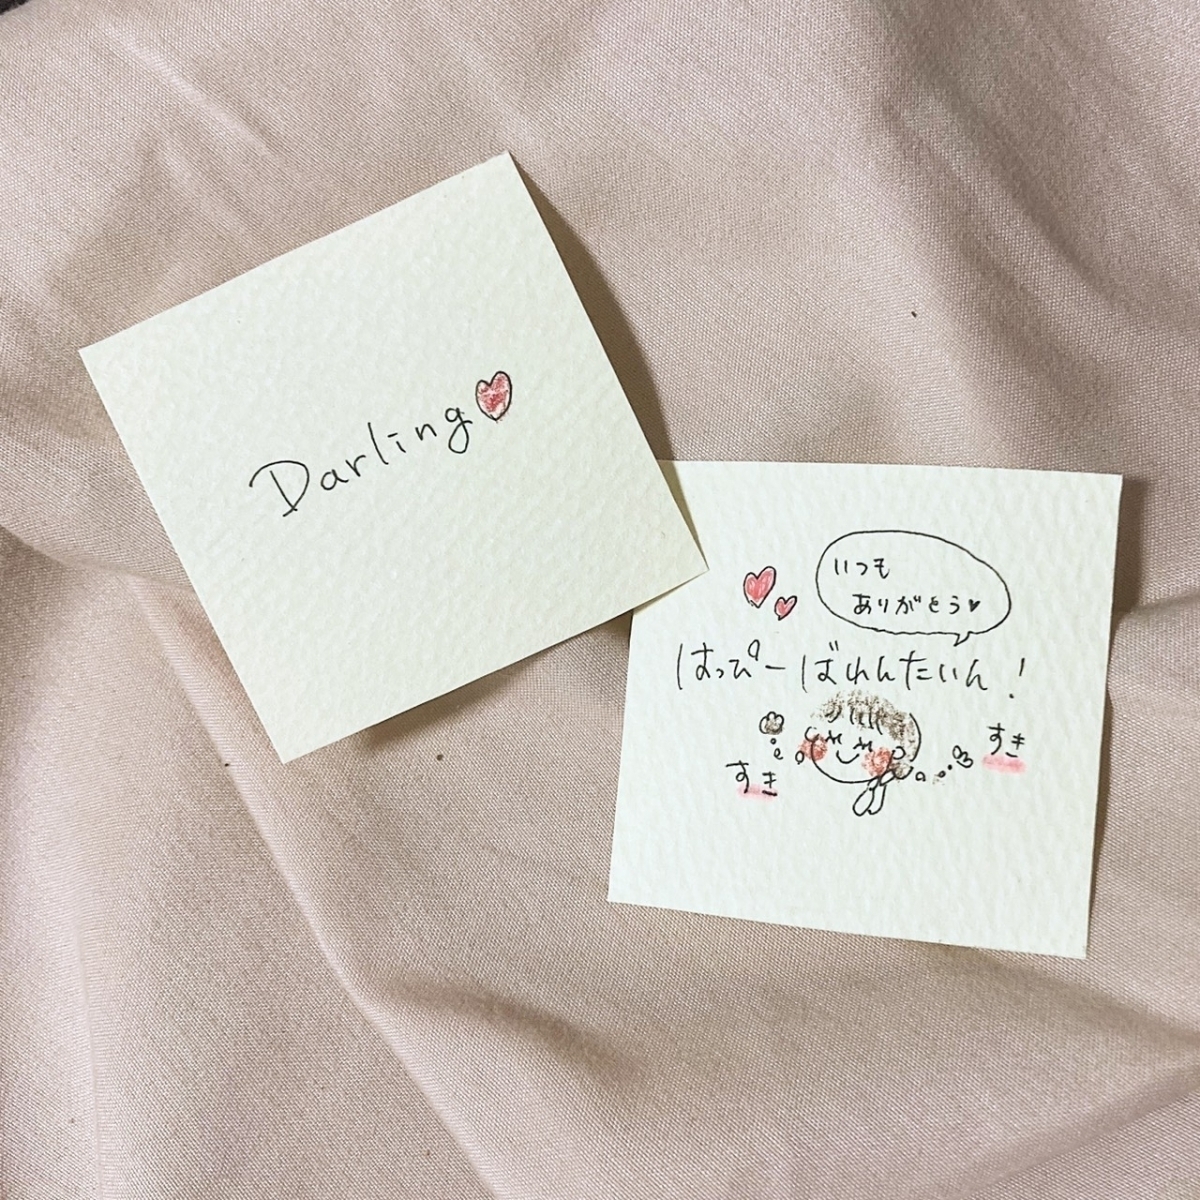 好きが伝わるバレンタイン手書きメッセージカードの作り方 おしゃれラッピングに ローリエプレス